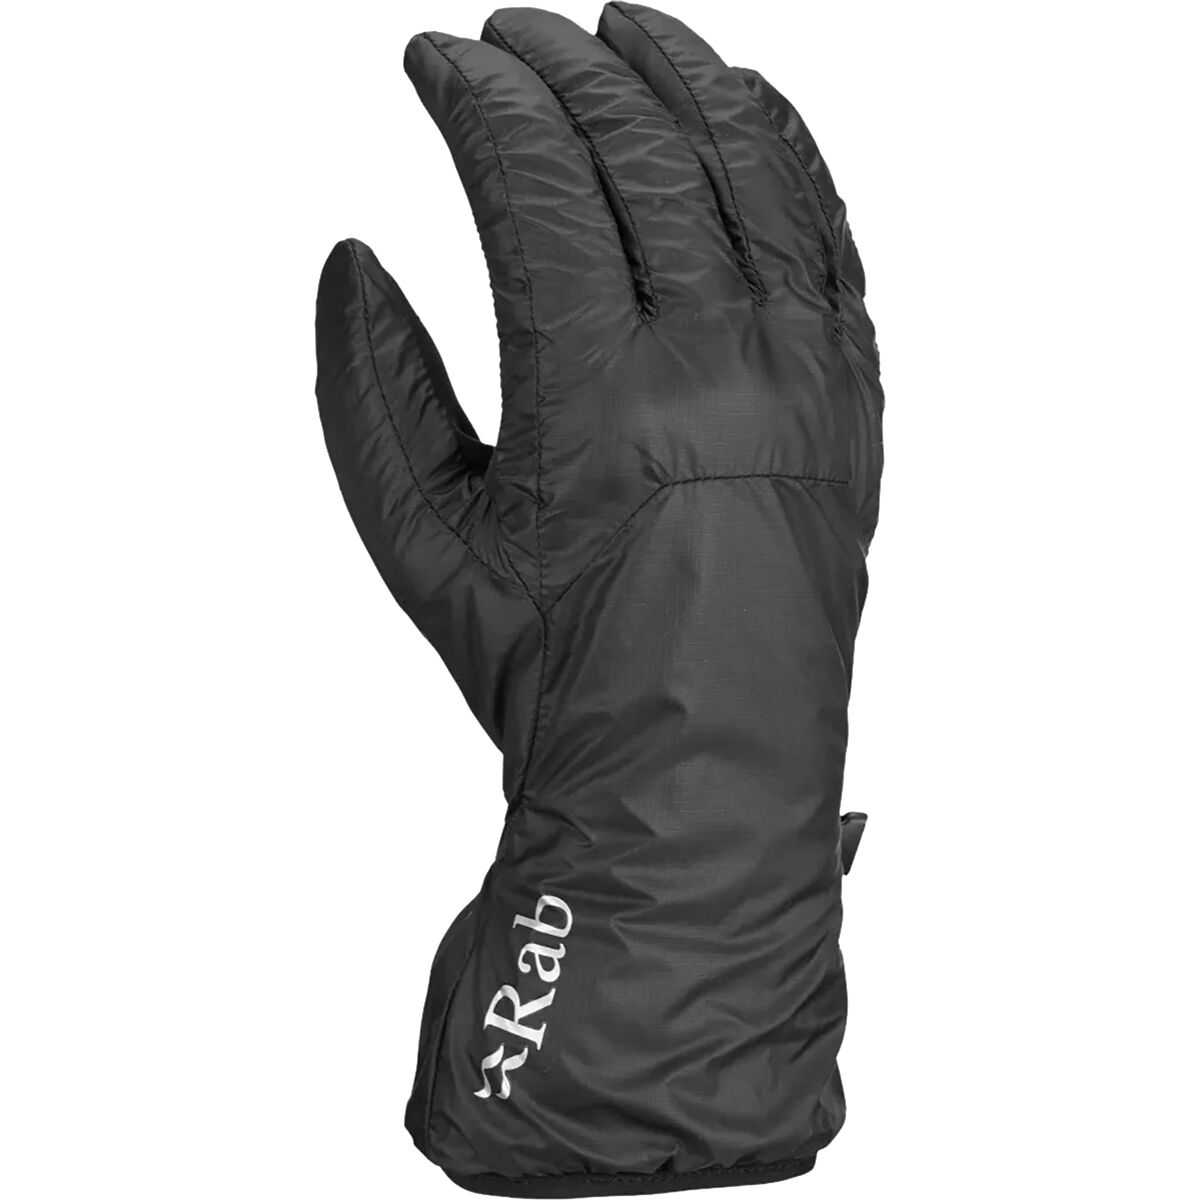 Rab Xenon Glove - Men's Black